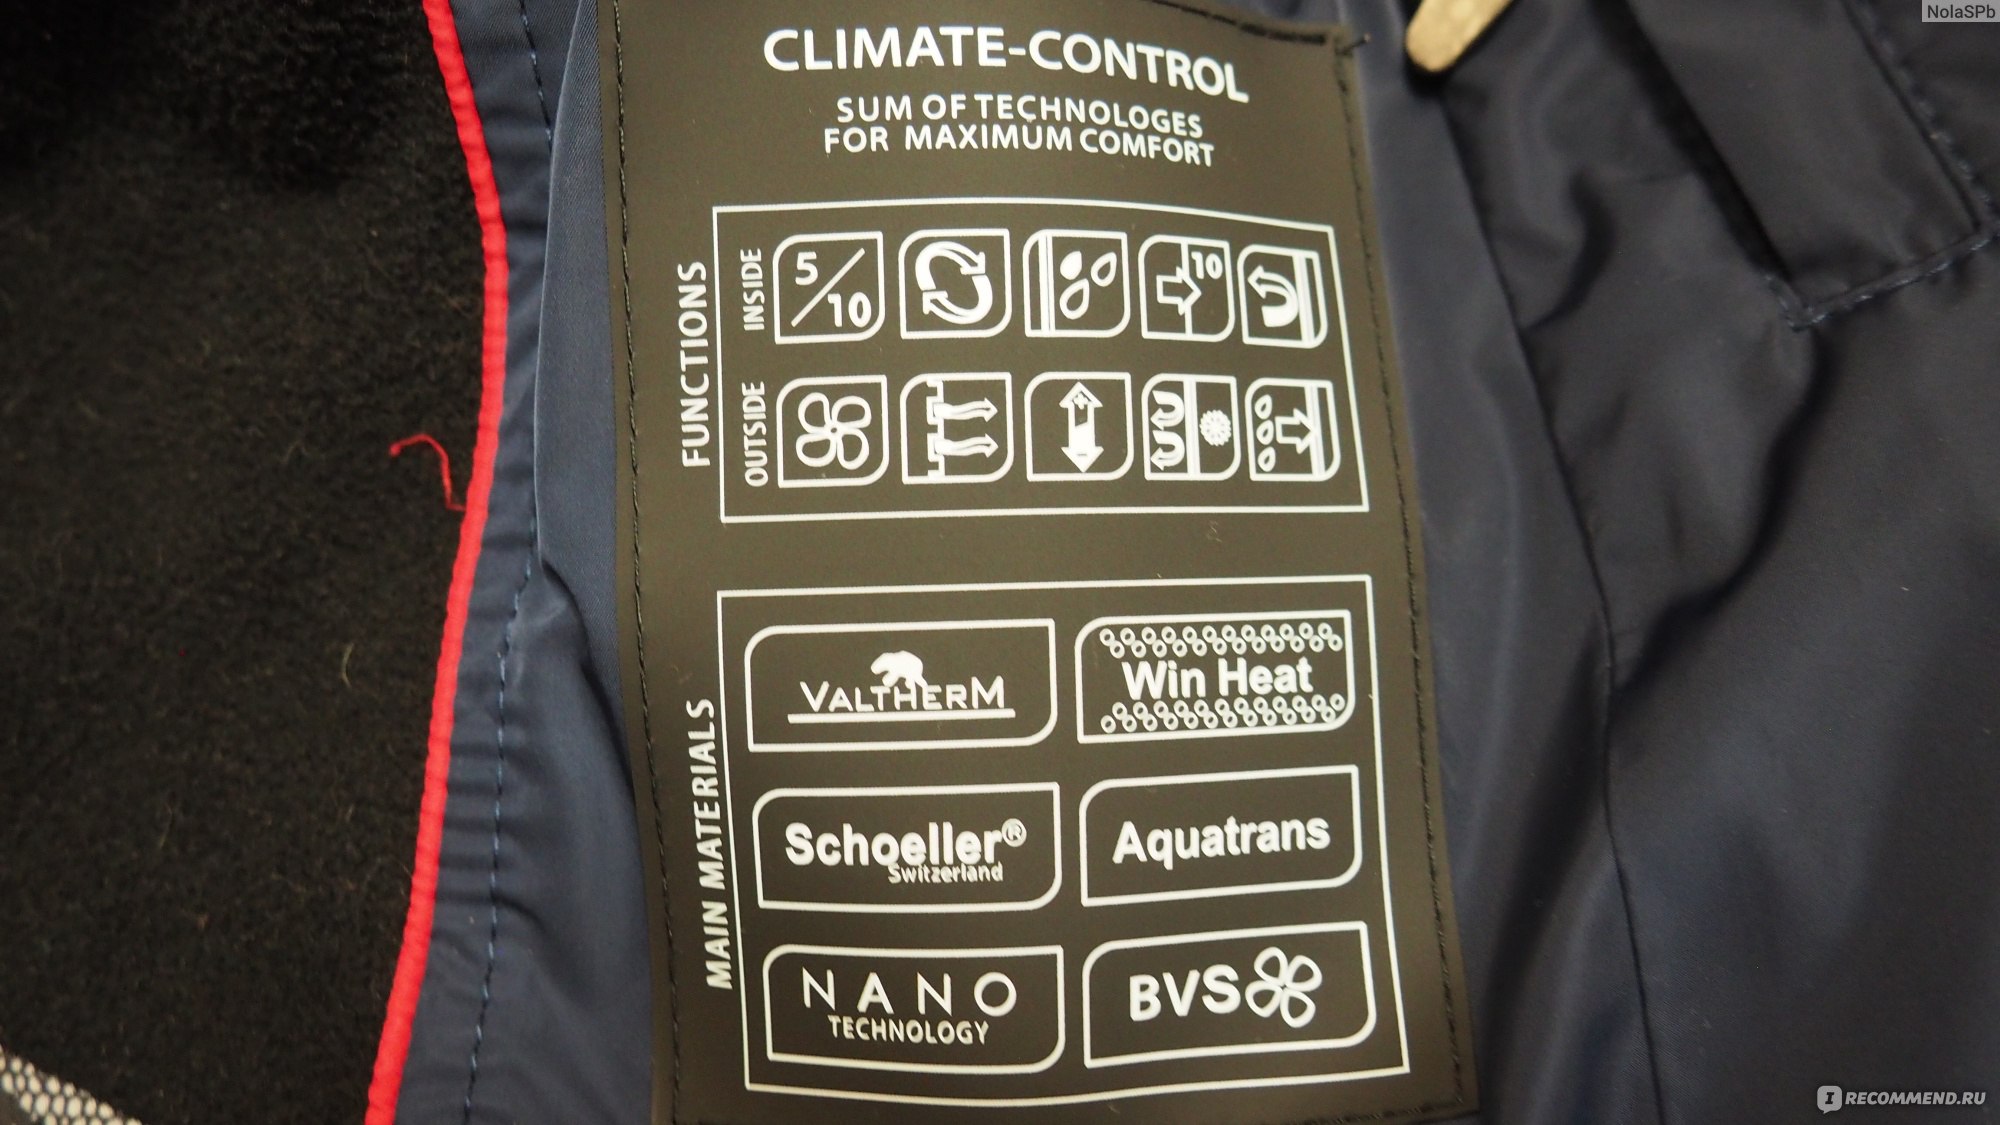 Зимняя женская куртка Limo Lady с климат-контролем фото